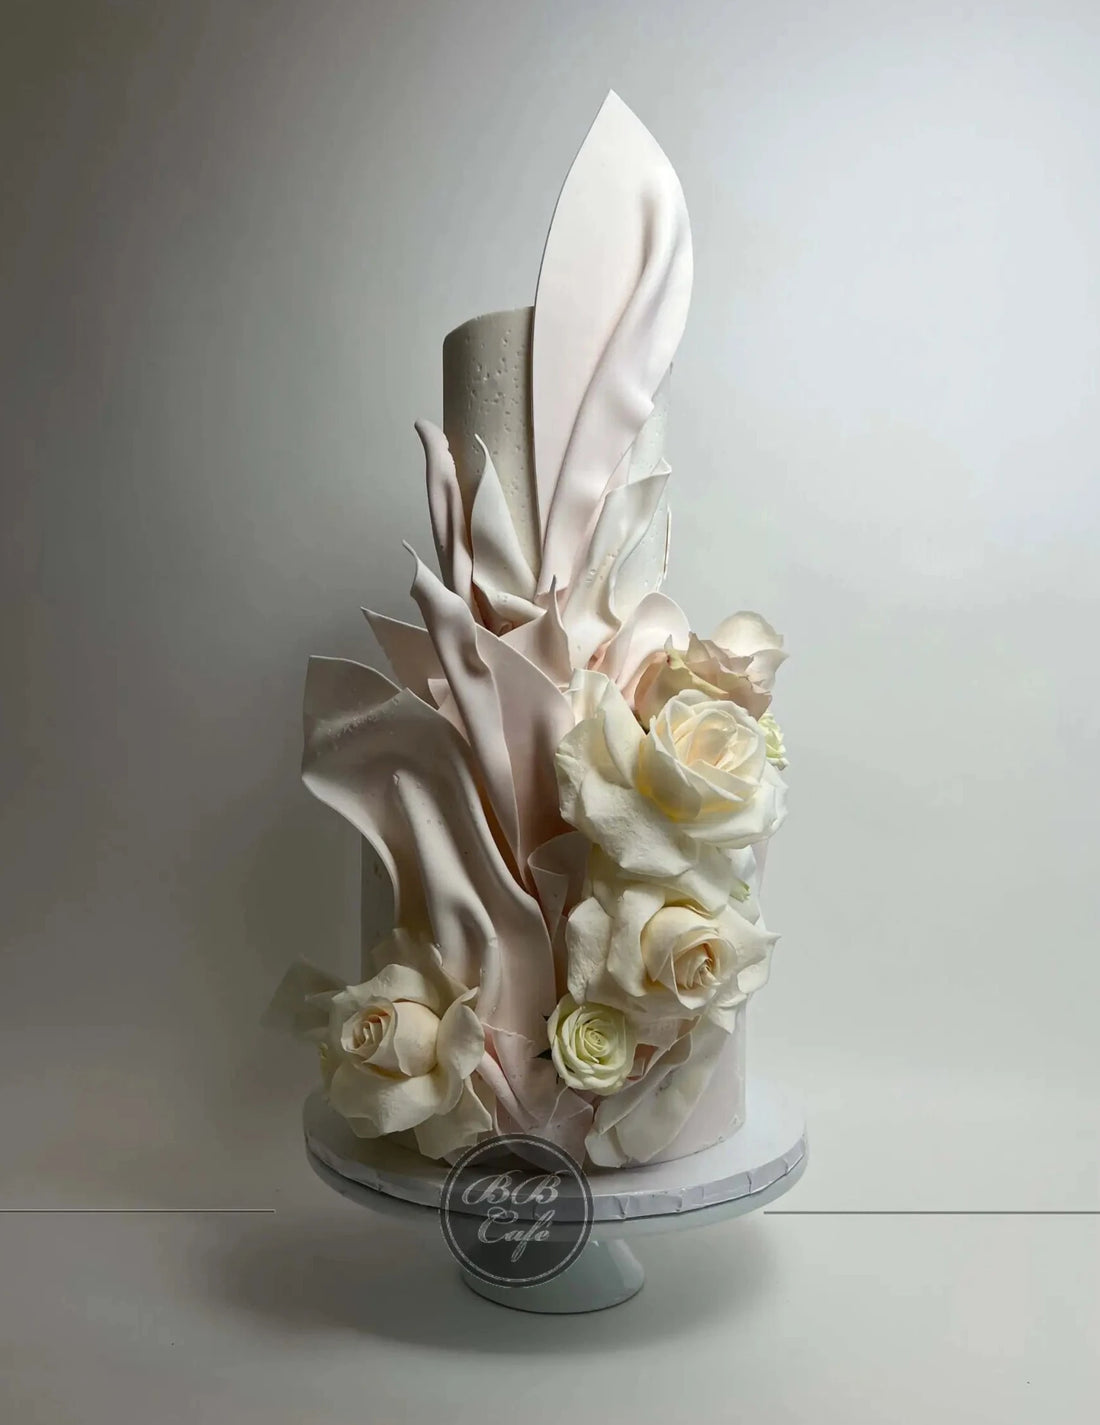 Soft sails - wedding cake